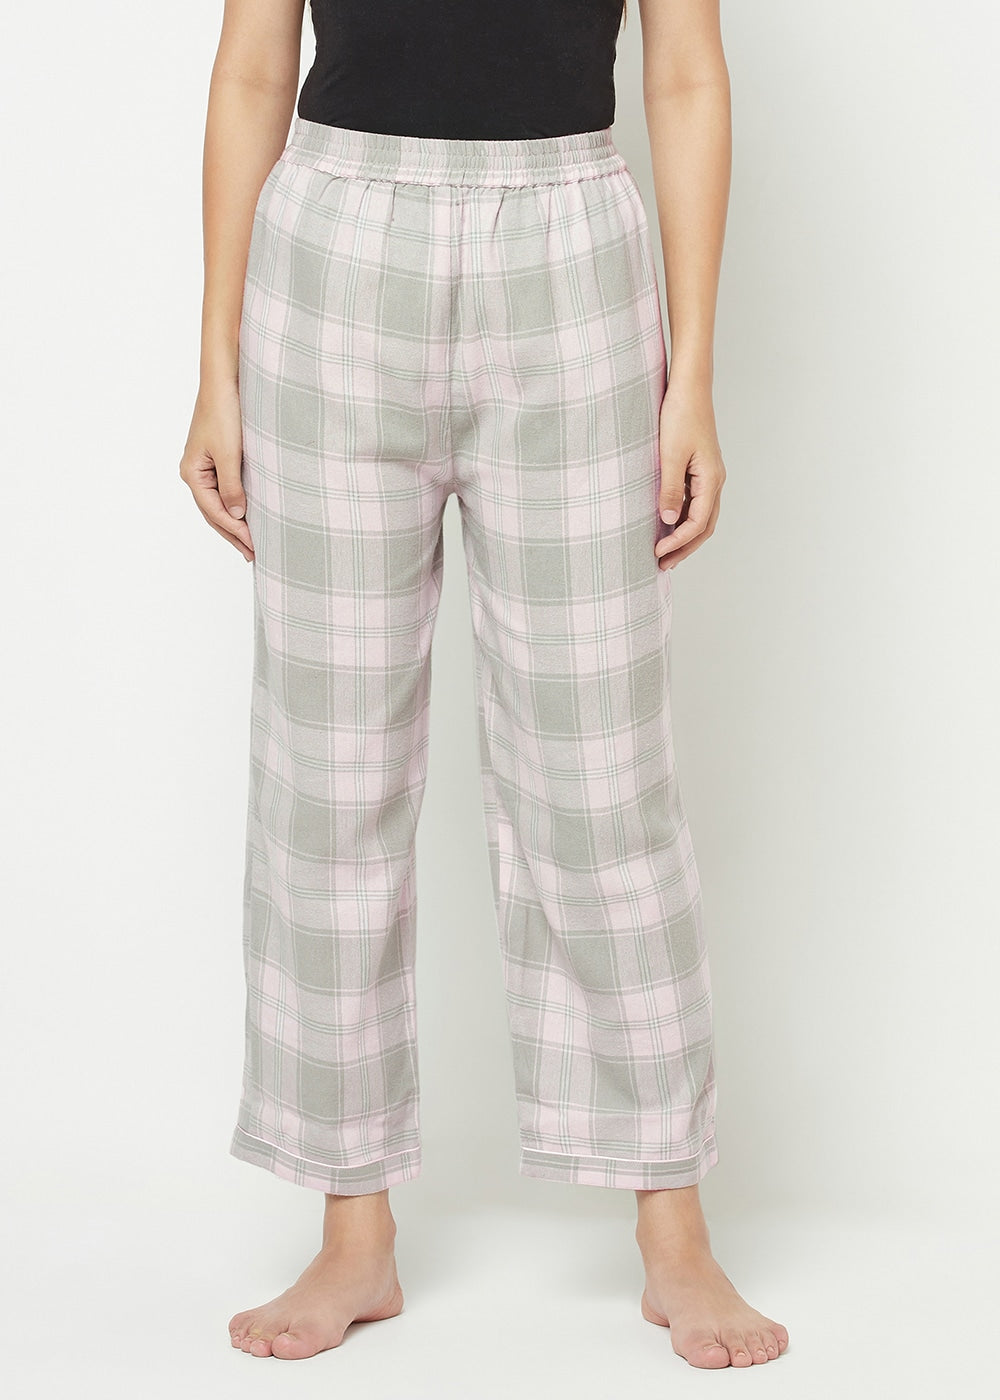 Pink & Grey Checks Pyjama Set